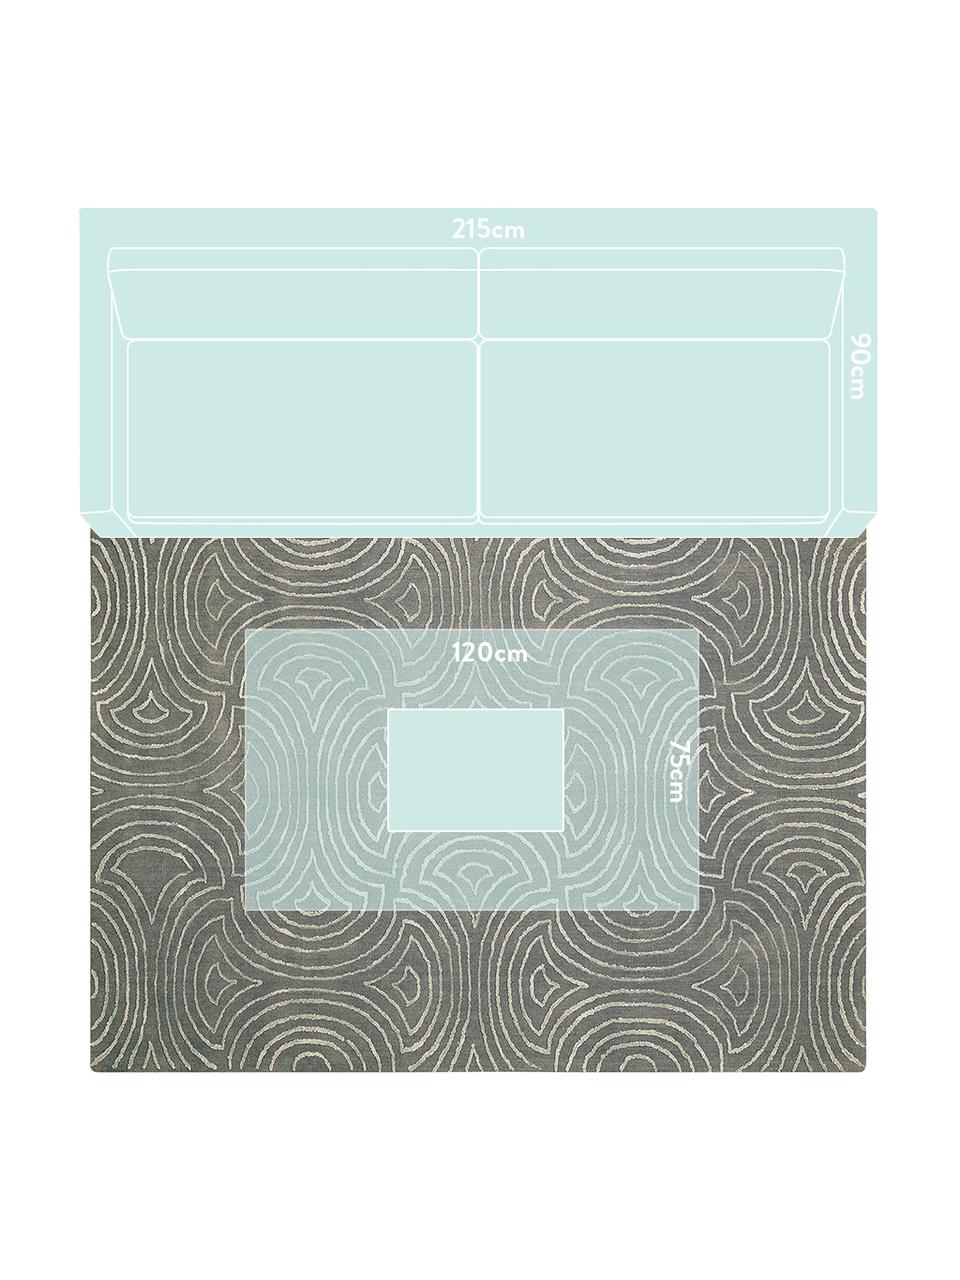 Handgetuft vloerkleed Vita Illusion met hoog-diep effect, Bovenzijde: 90% polyester, 10% viscos, Onderzijde: katoen, latex-gecoat, Mosgroen, B 150 x L 215 cm (maat M)